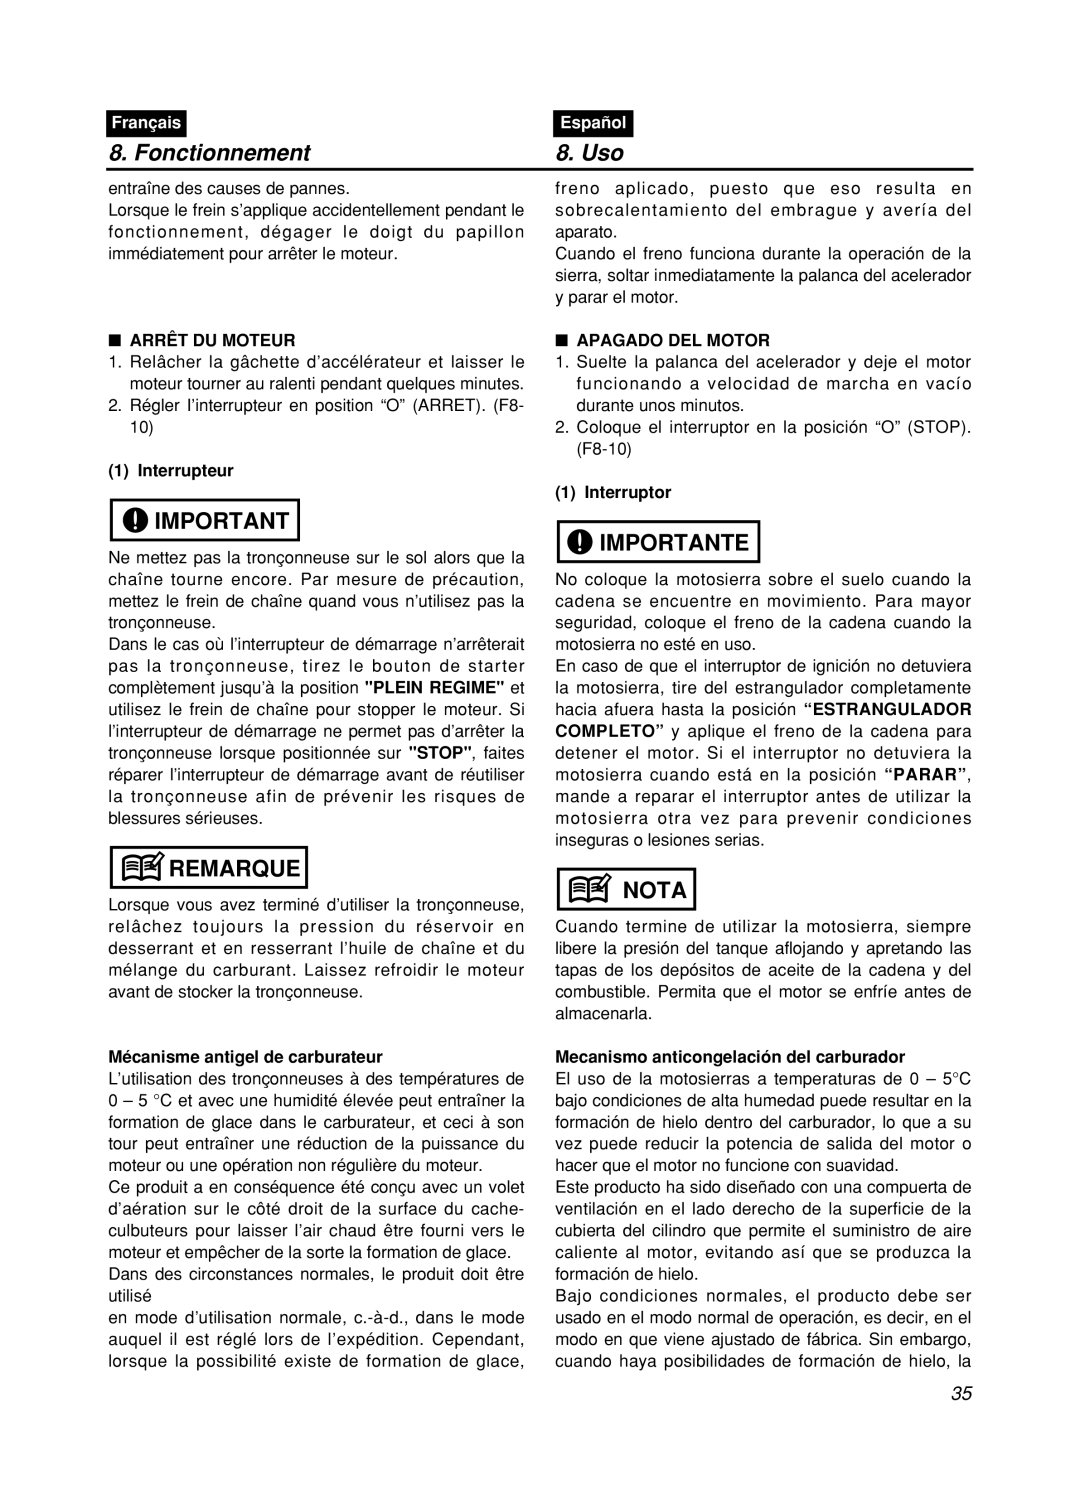 Zenoah GZ400 manual Fonctionnement, Uso, Remarque, Importante, Nota, Français, Español 